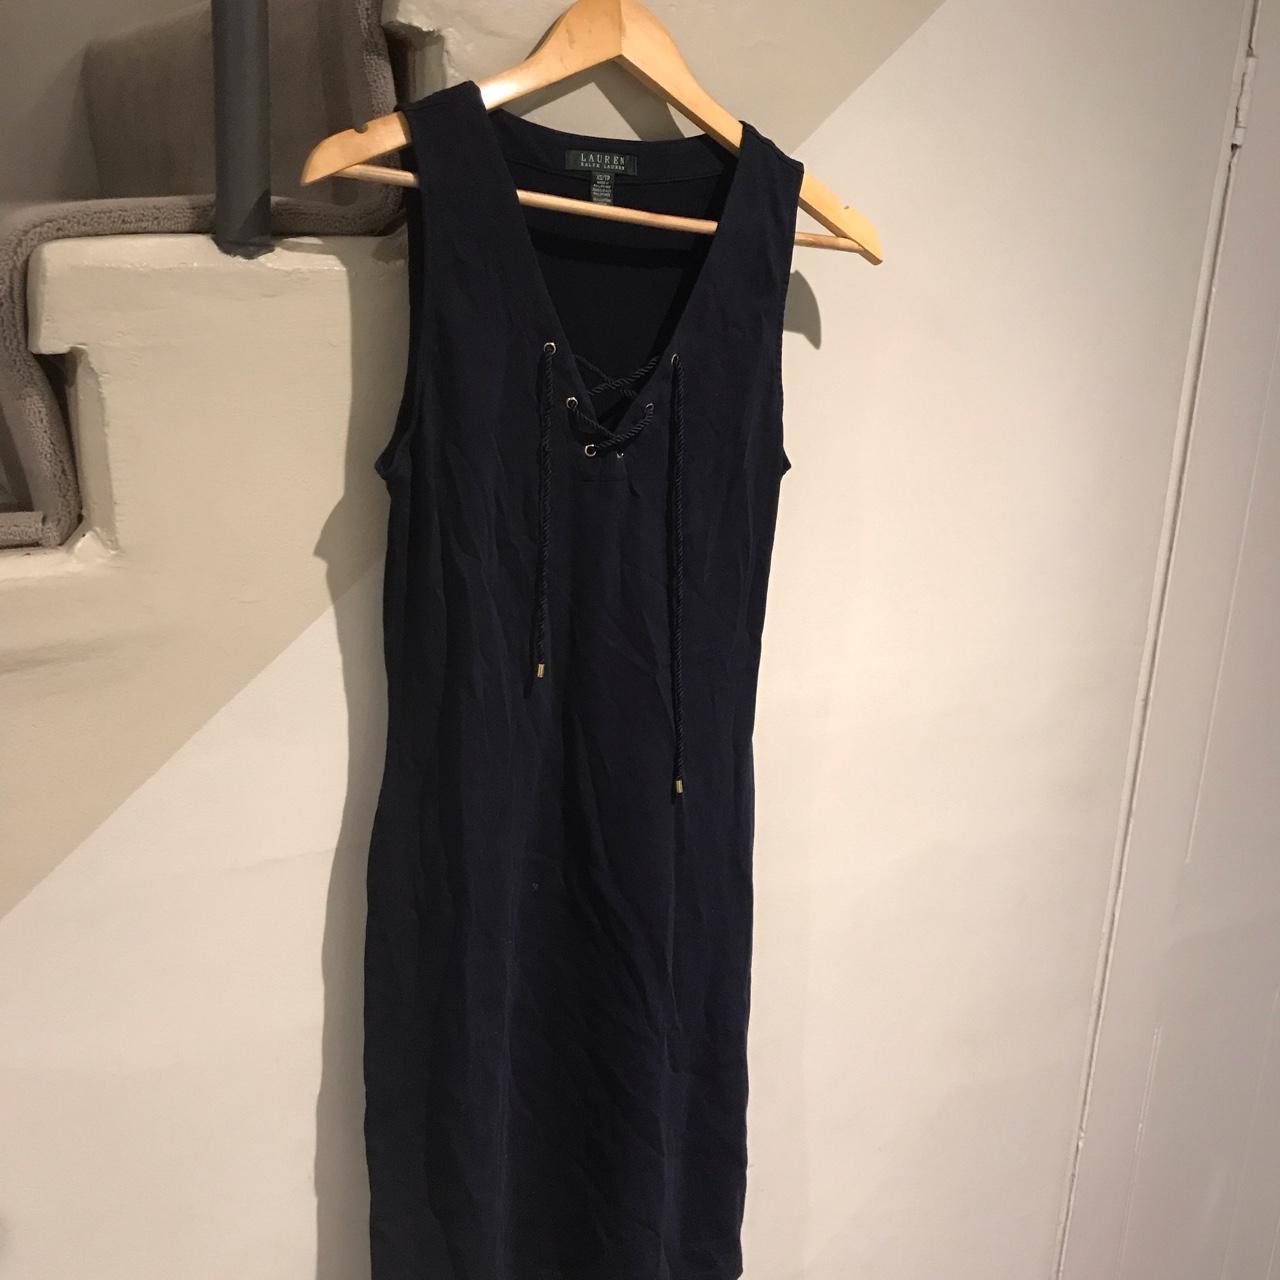 Ralph Lauren shirtless navy dress size xs - Depop